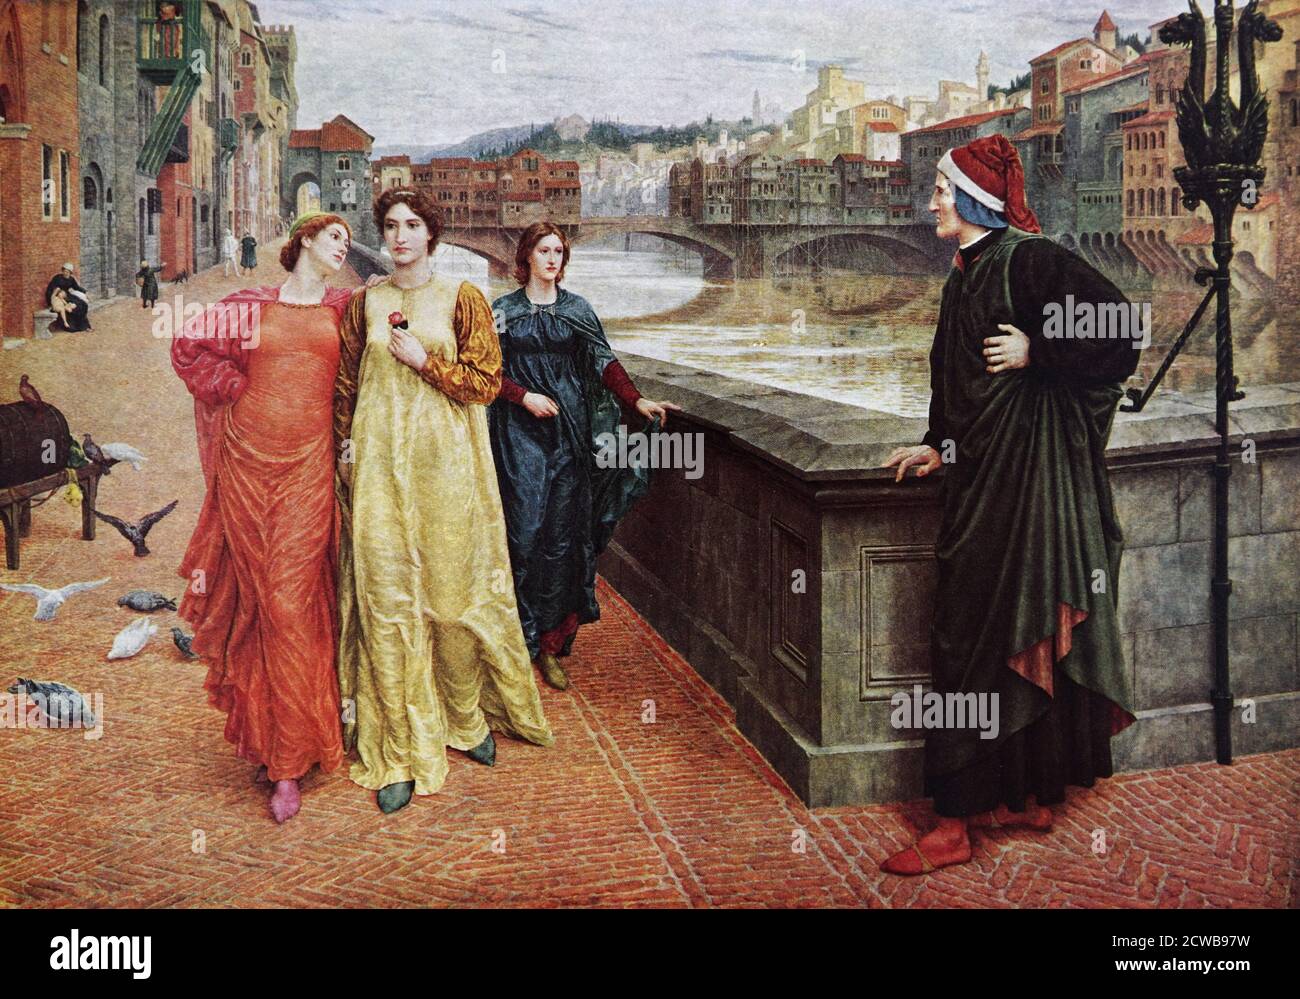 Gemälde mit dem Titel 'Dante und Beatrice' von Henry Holiday. Henry Holiday (1839-1927) ein britischer historischer Genre- und Landschaftsmaler, Buntglasdesigner, Illustrator und Bildhauer. Stockfoto